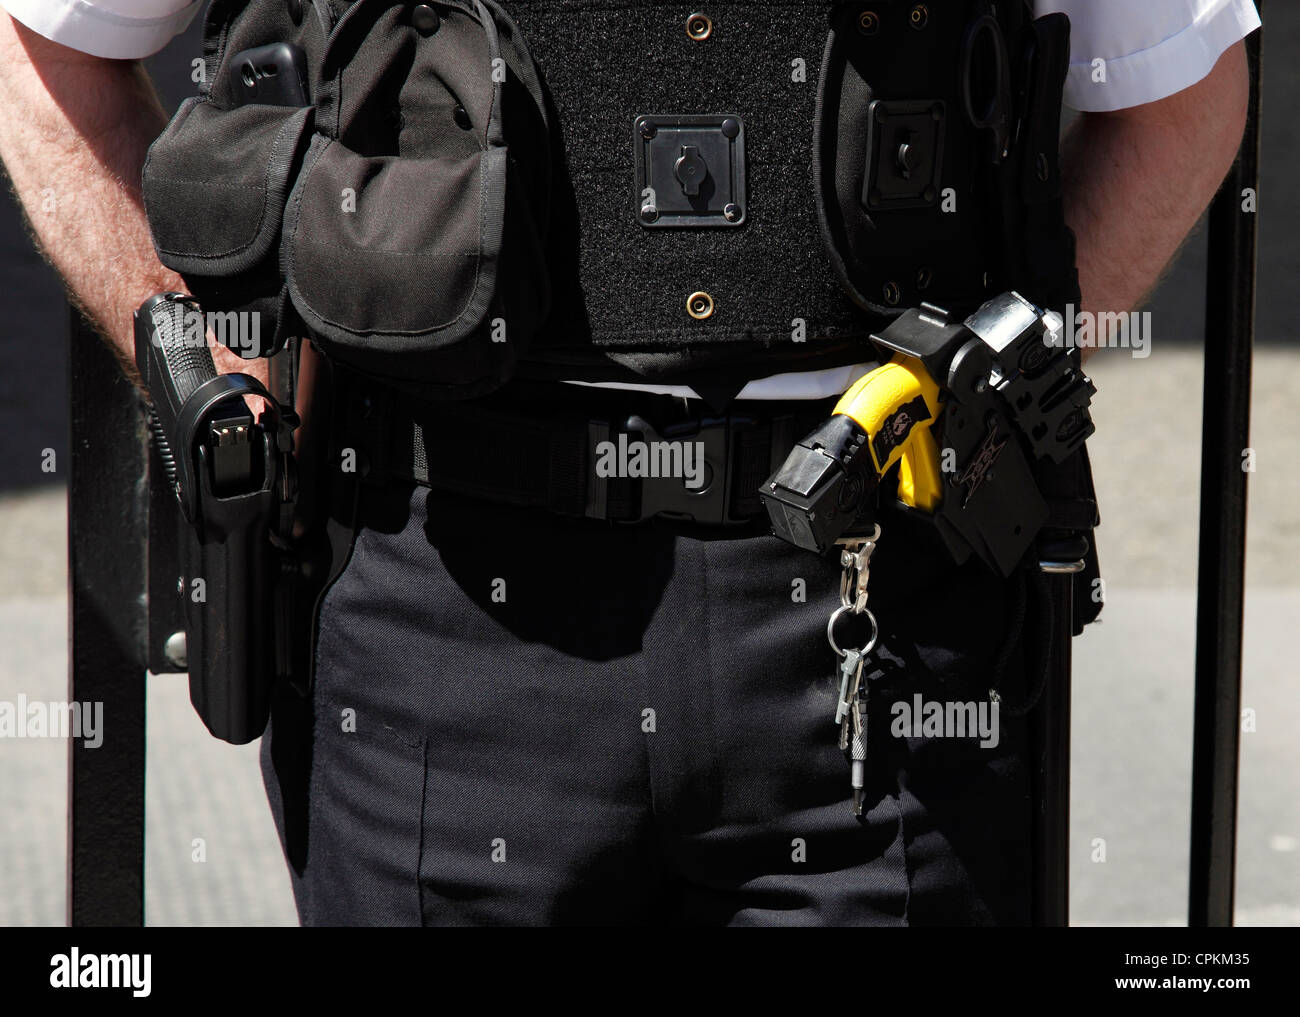 Armé d'un agent de police métropolitaine à Downing Street, Westminster, Londres, Angleterre, Royaume-Uni Banque D'Images